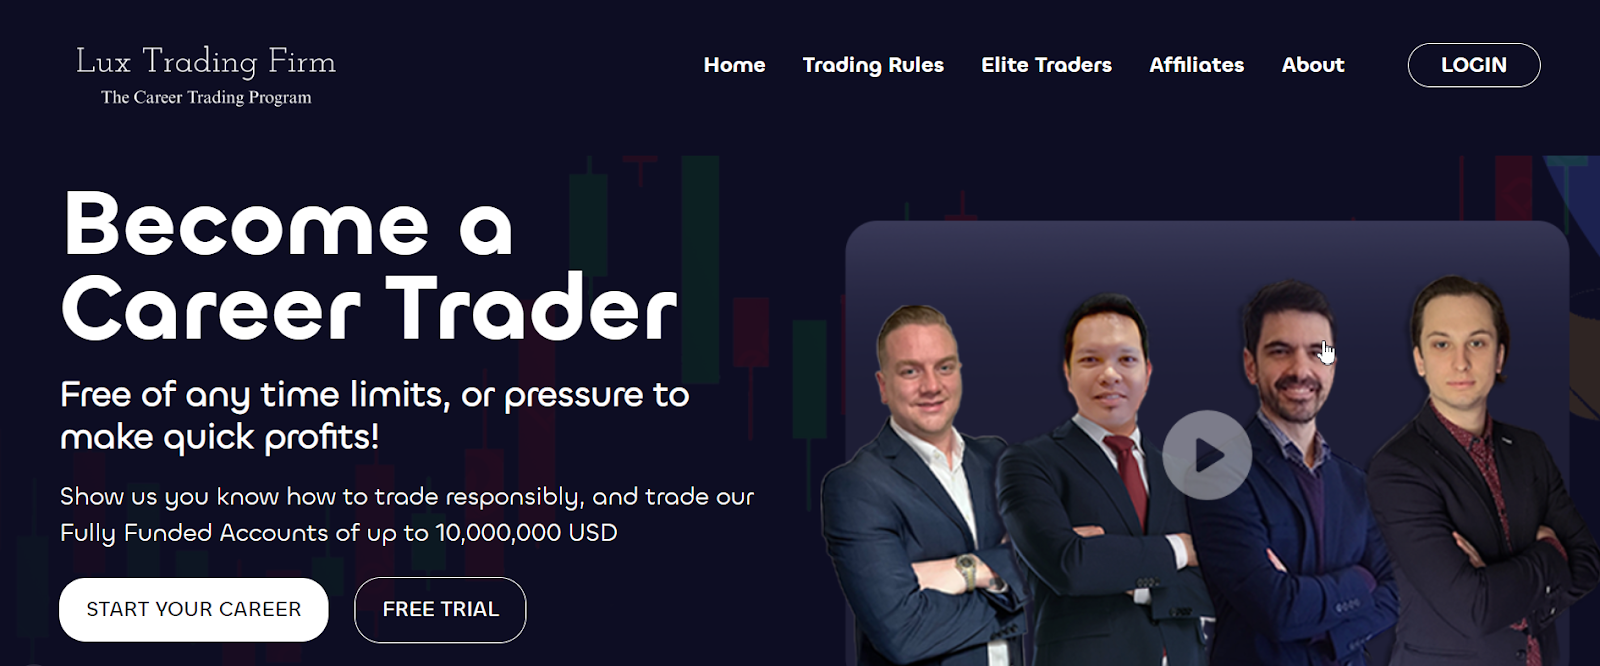 Обзор Lux Trading Firm - Бесплатная пробная версия